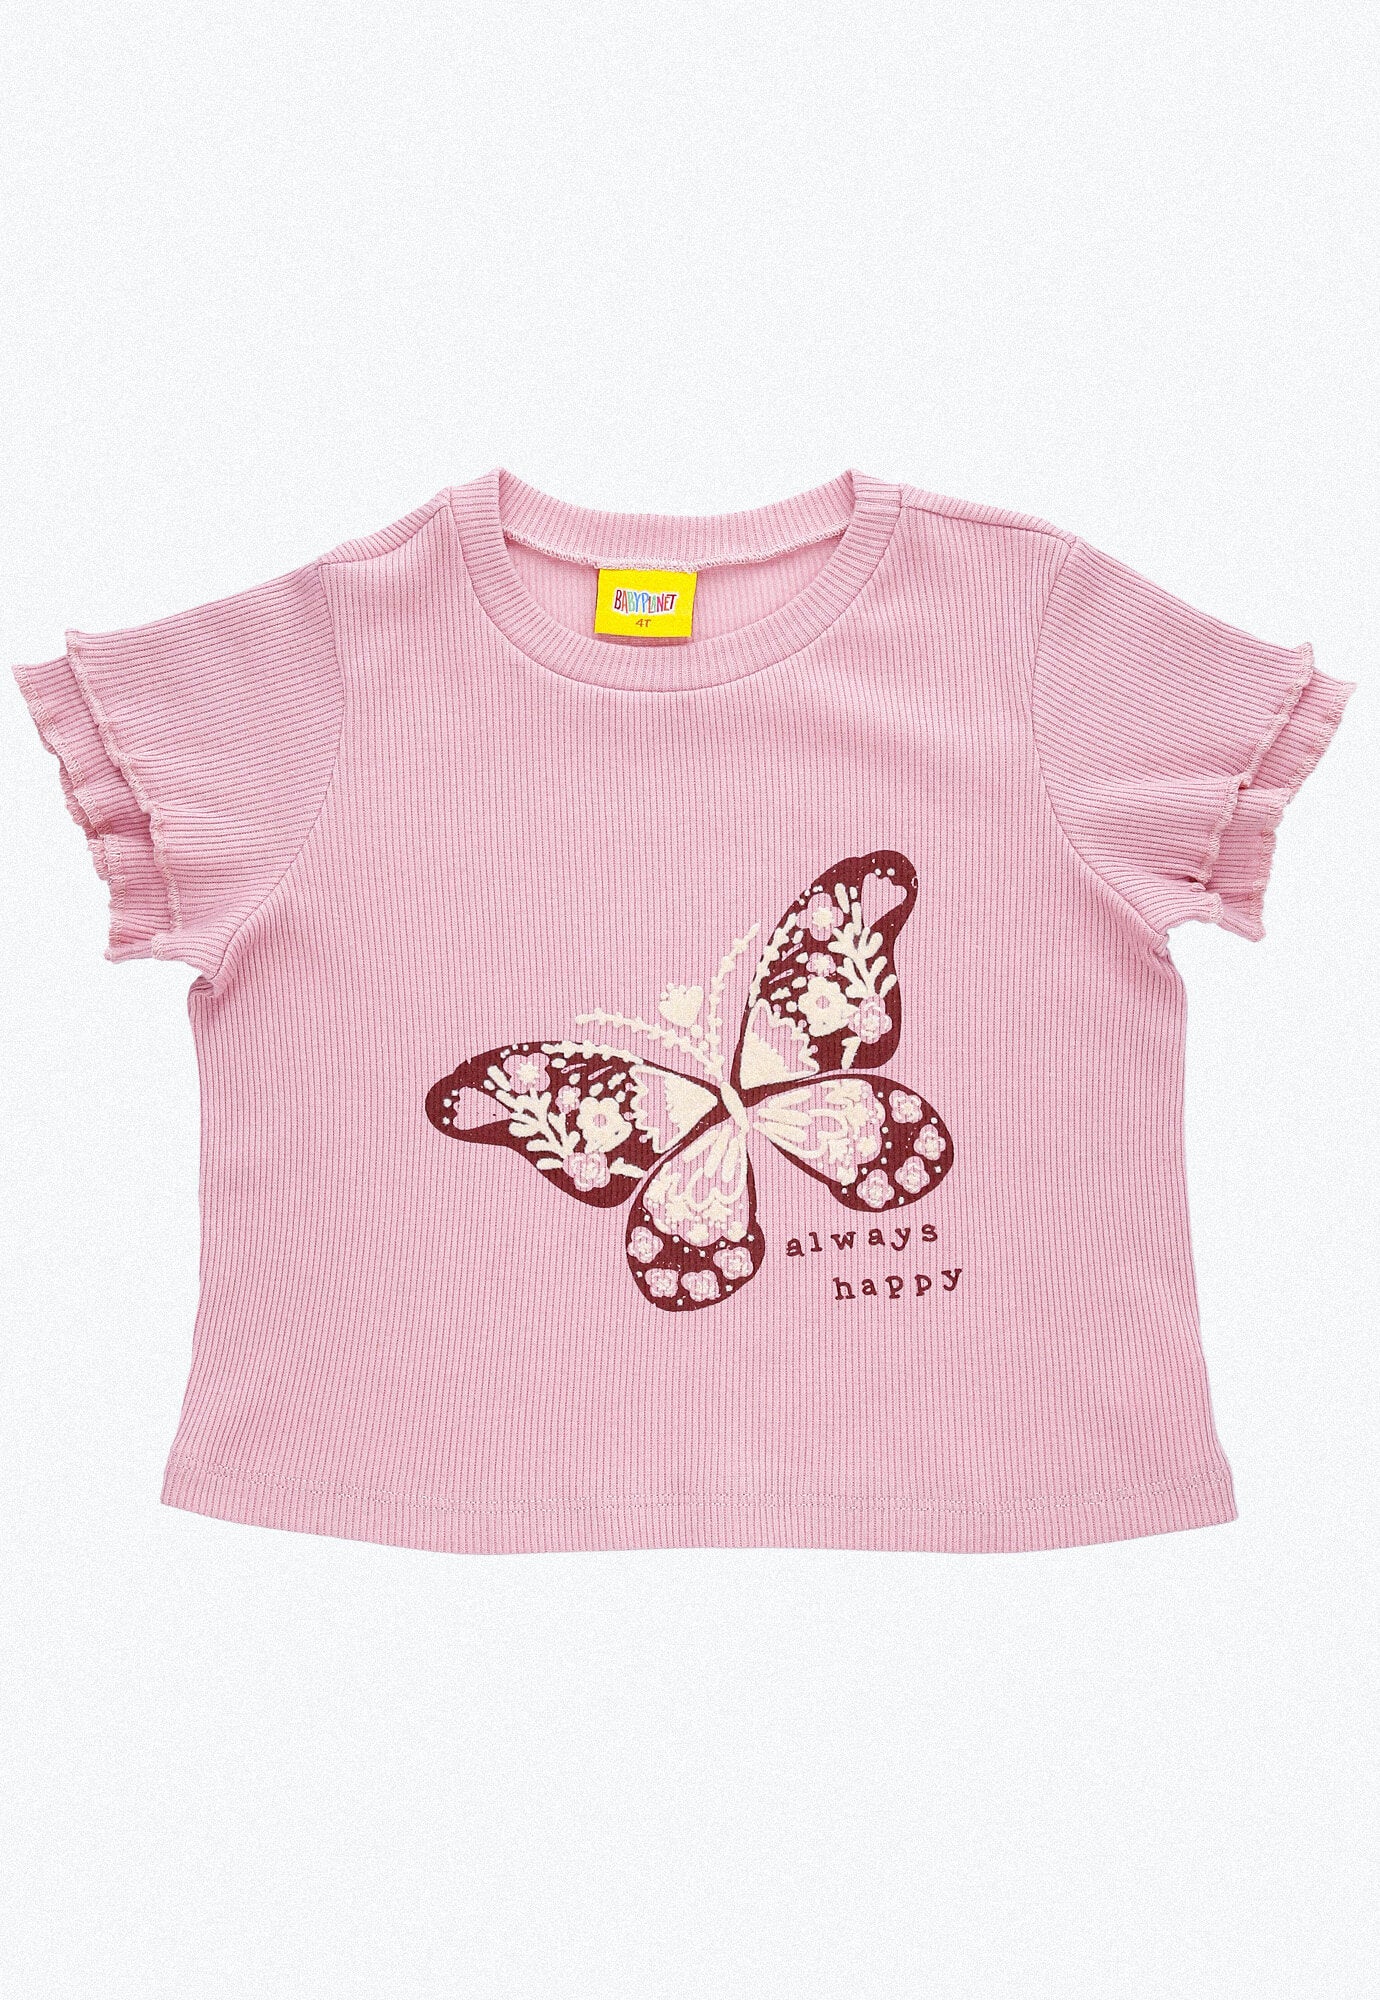 Conjunto largo, camiseta rosa claro en rib con estampado frontal y pantalón rosa claro con bota amplia para bebé niña